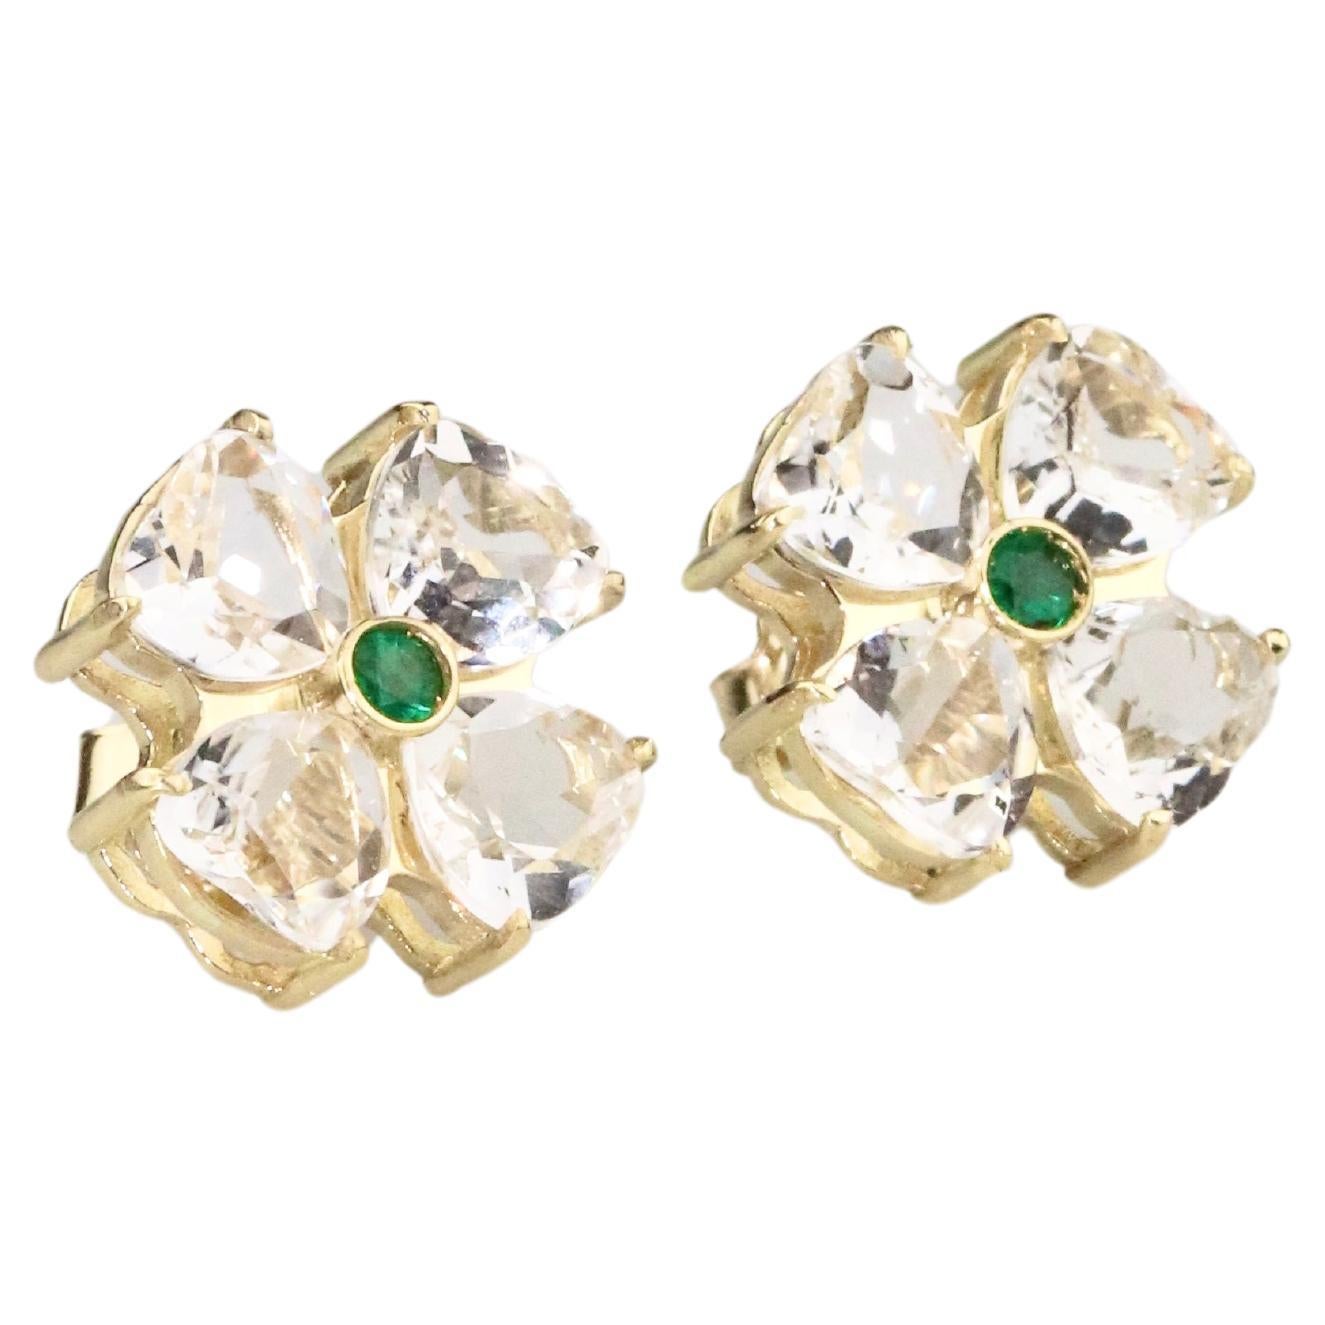 Flower Earrings & Emerald - 18K Solid Yellow Gold